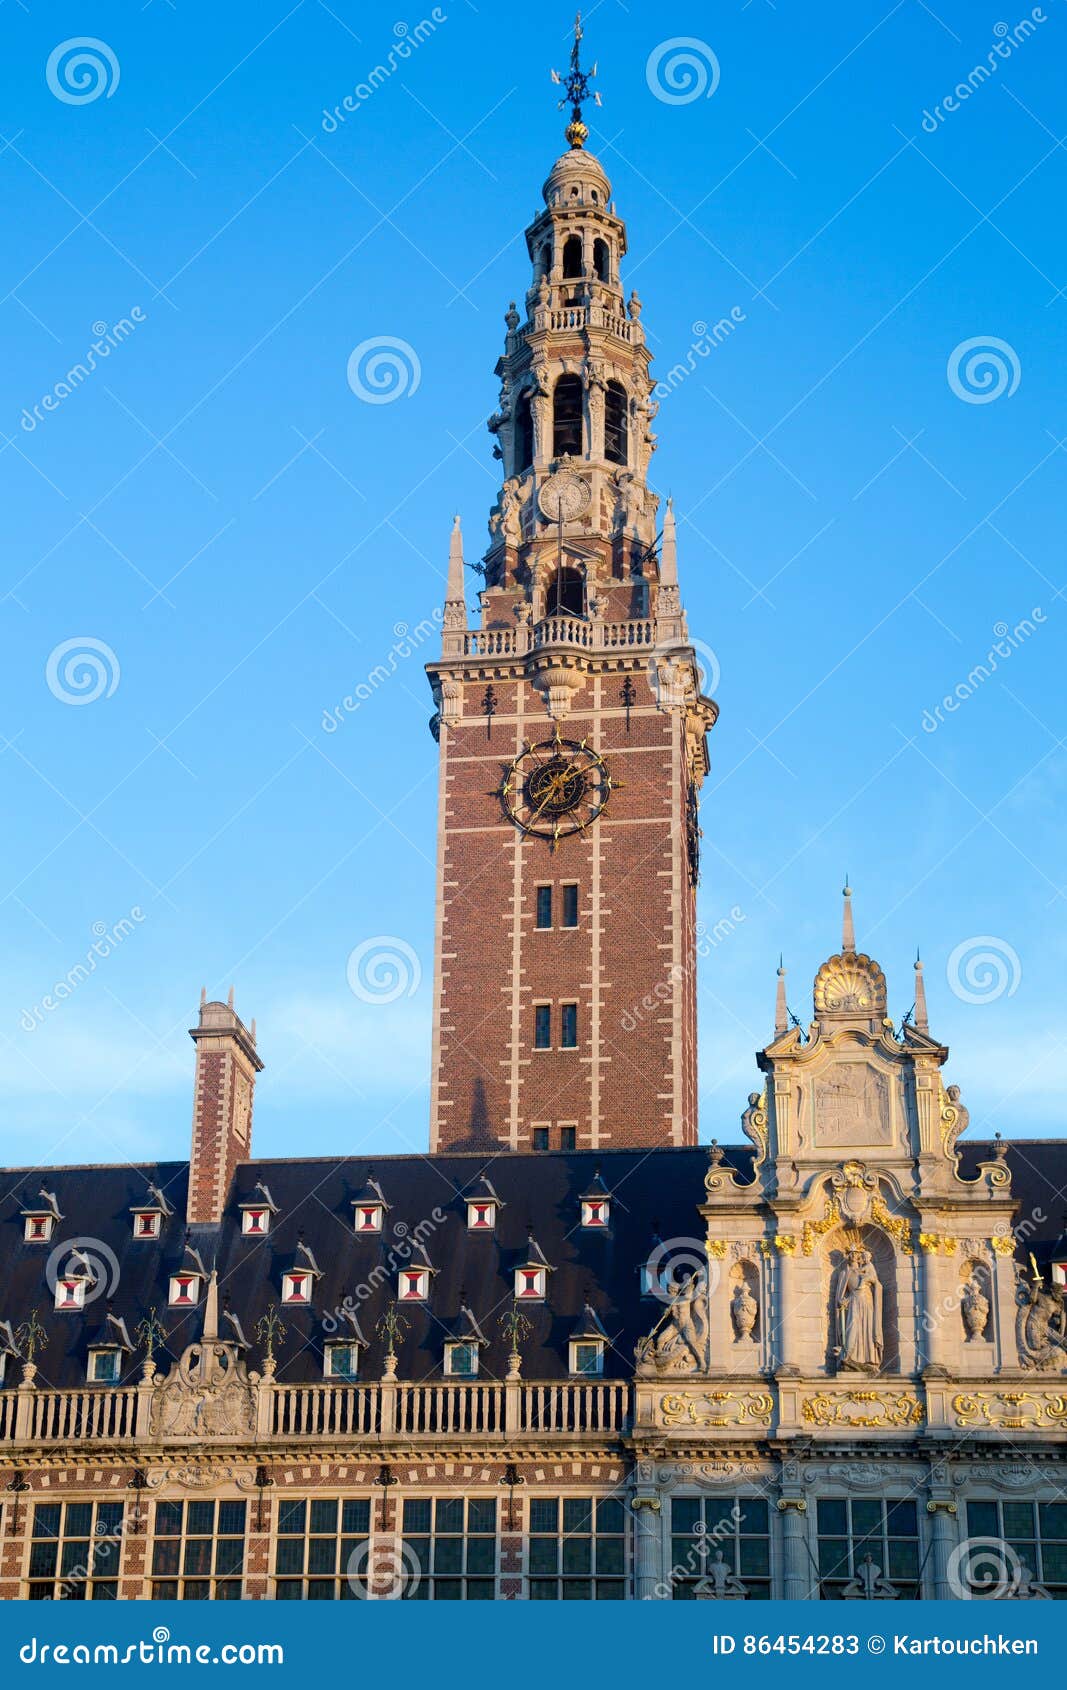 Ladeuze plein Leuven stock image. Image of catholic, lovanio - 86454283